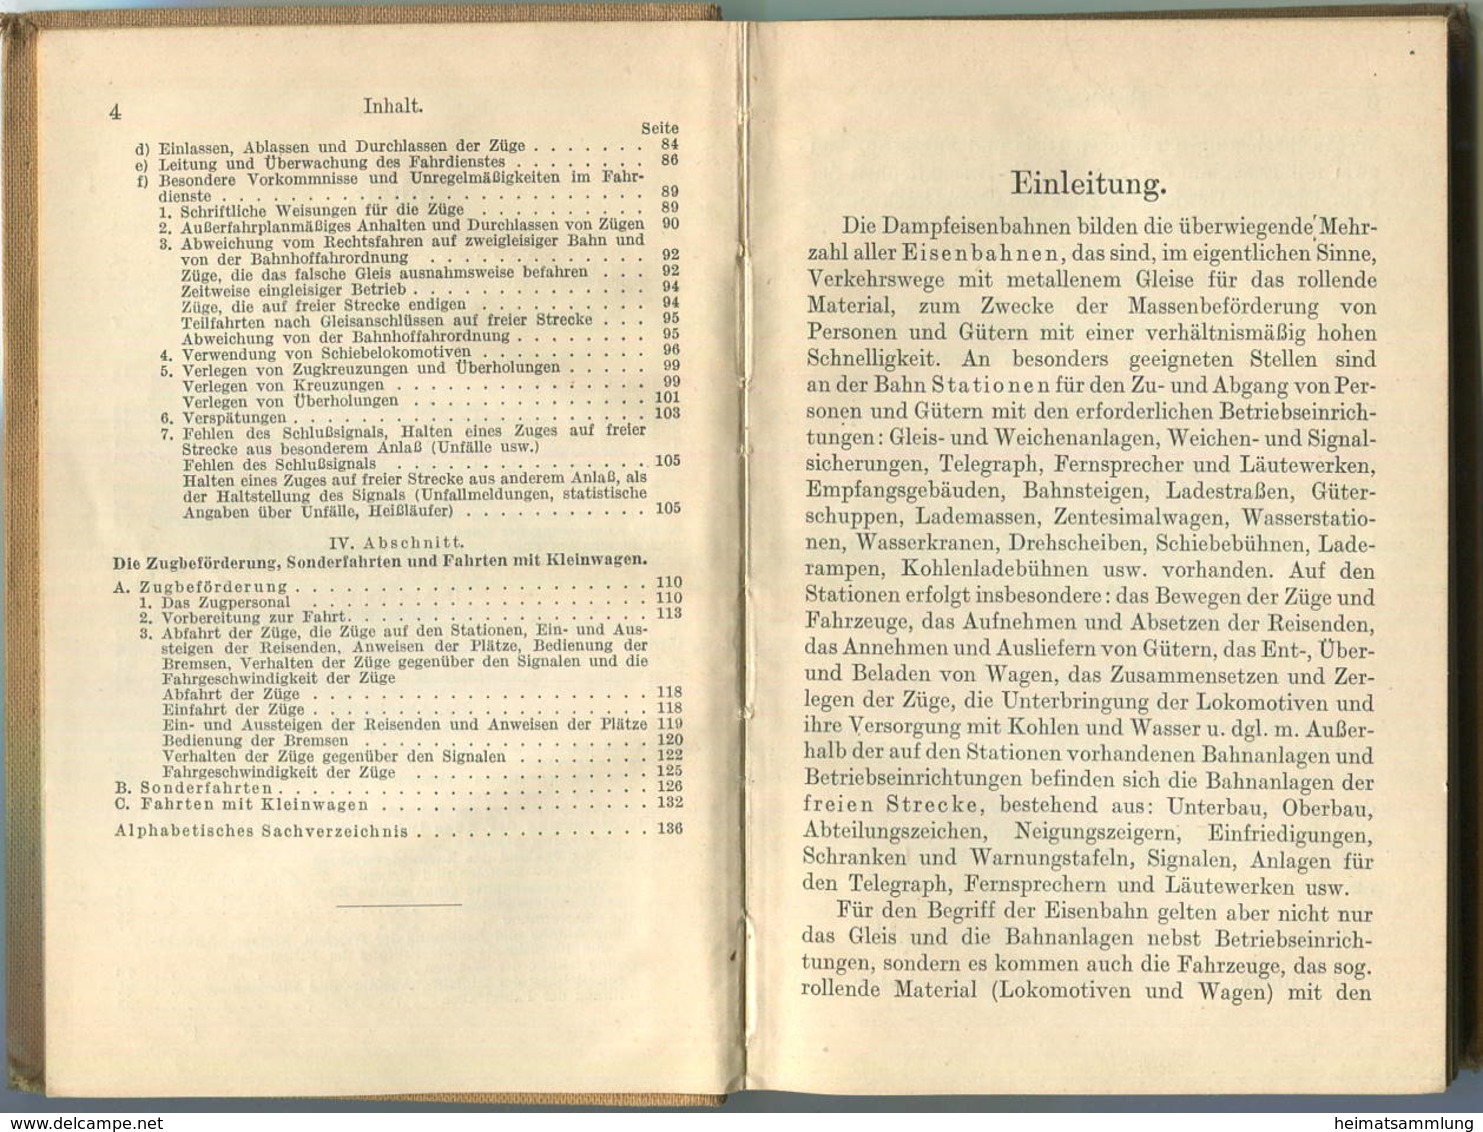 Sammlung Göschen - Der Eisenbahnbetrieb S. Scheibner 1913 - 140 Seiten Mit 3 Abbildungen - G. J. Göschensche Verlagshand - Transport